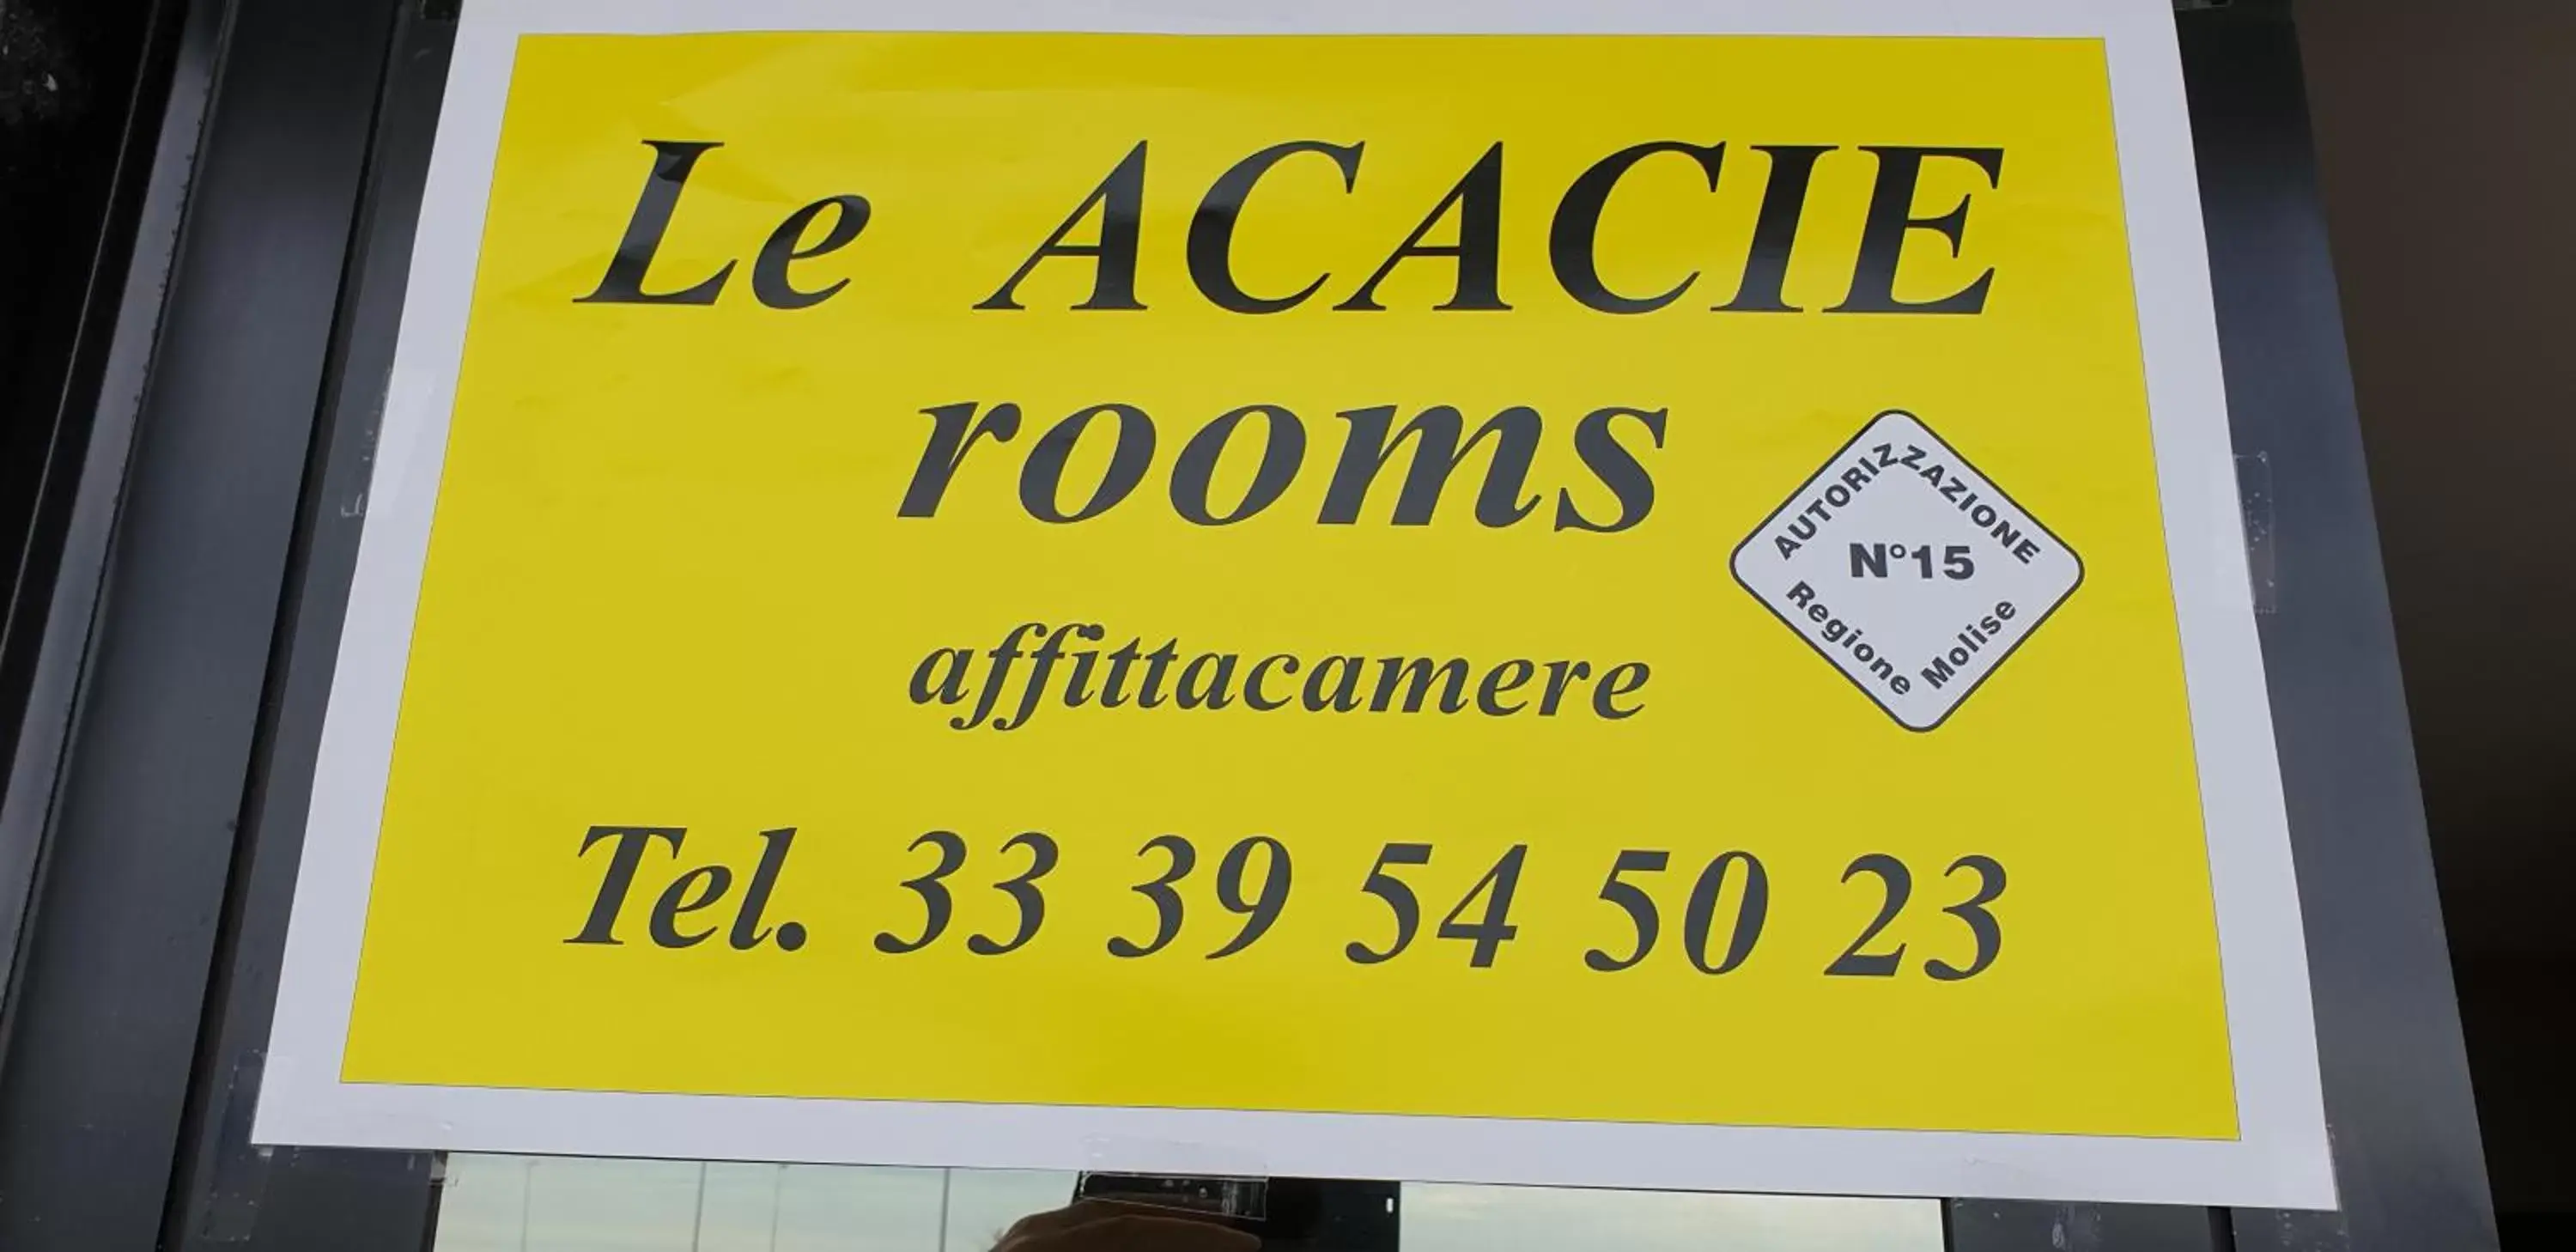 Le Acacie rooms - ex B&B